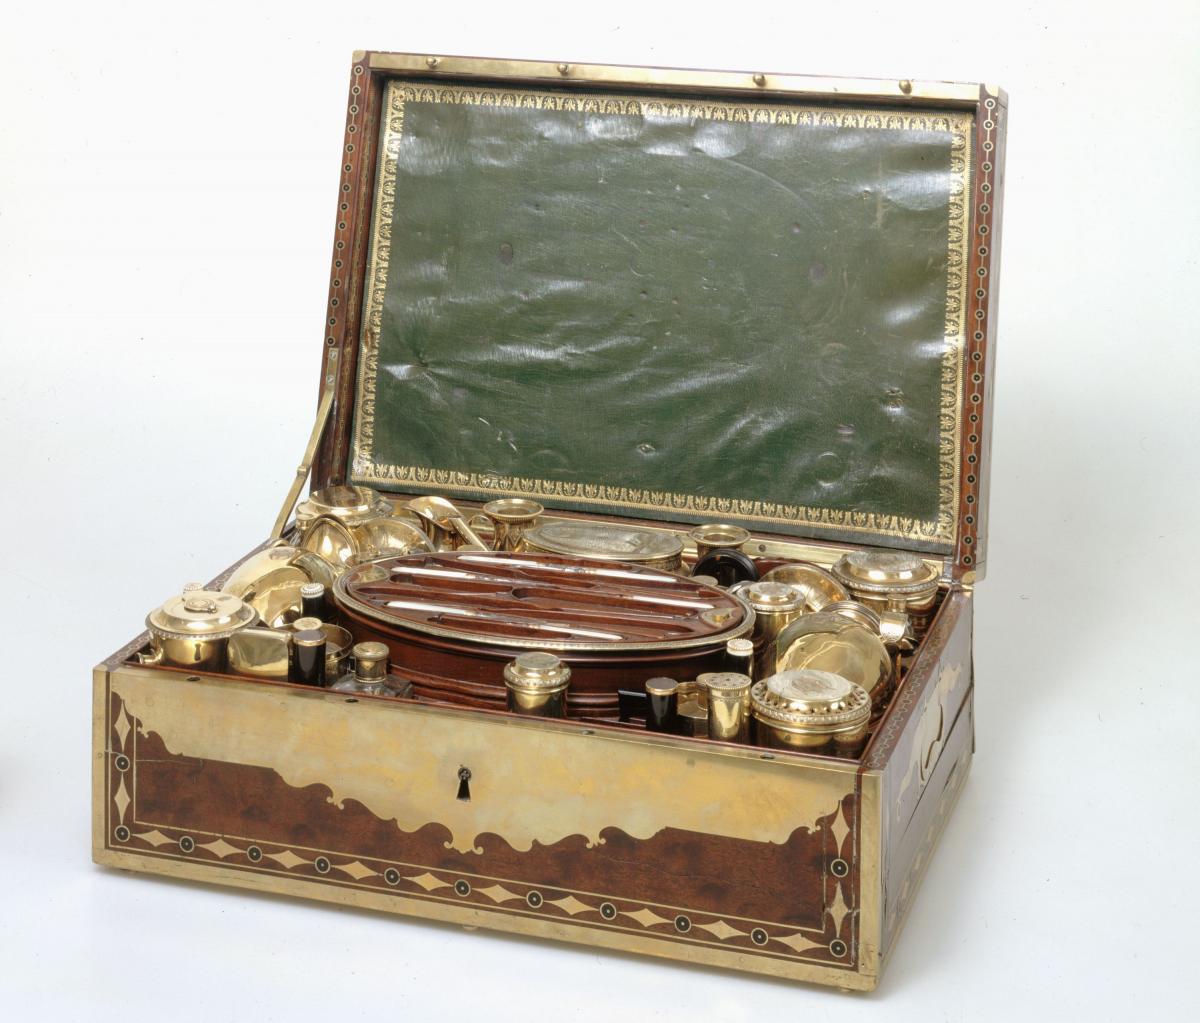 Nécessaire de campagne de Napoléon Ier. Instruments de travail